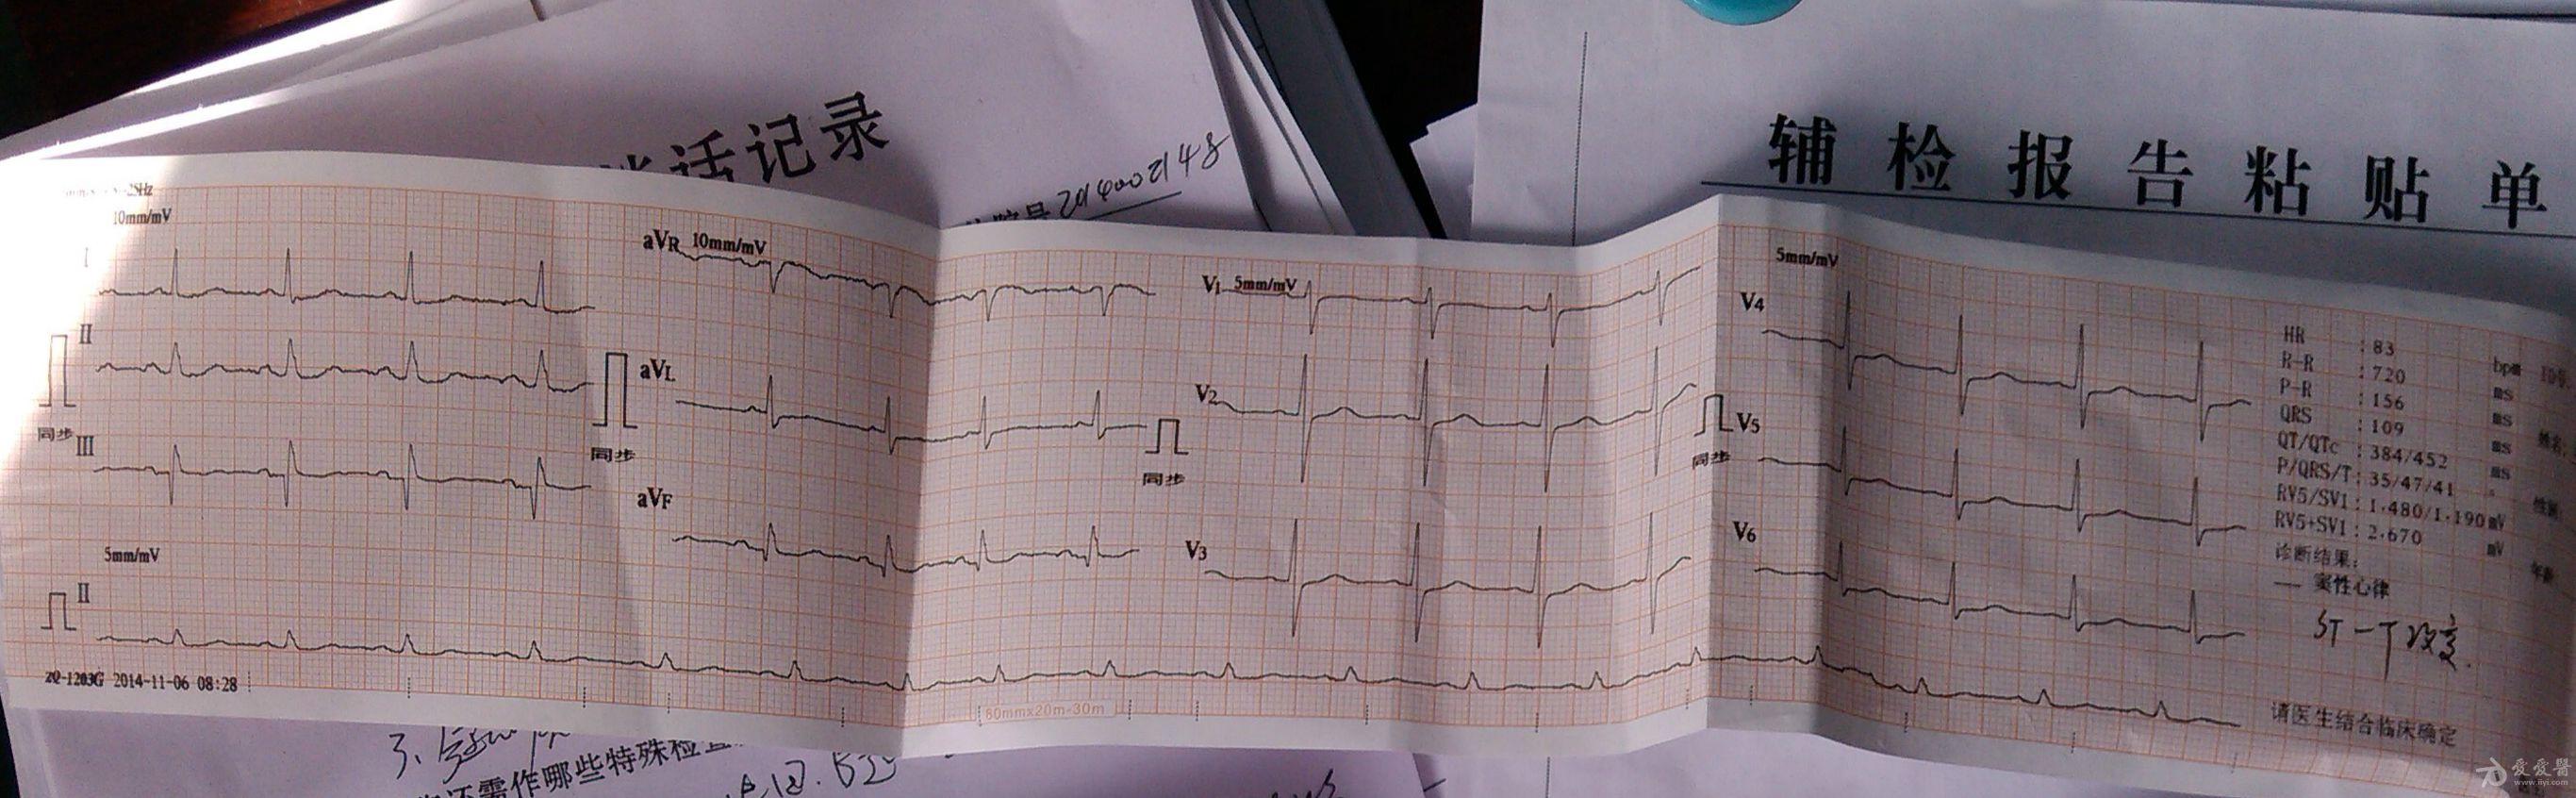 69 心电图脑电图专业讨论版 69 患者心跳骤停前3分钟心电图,求